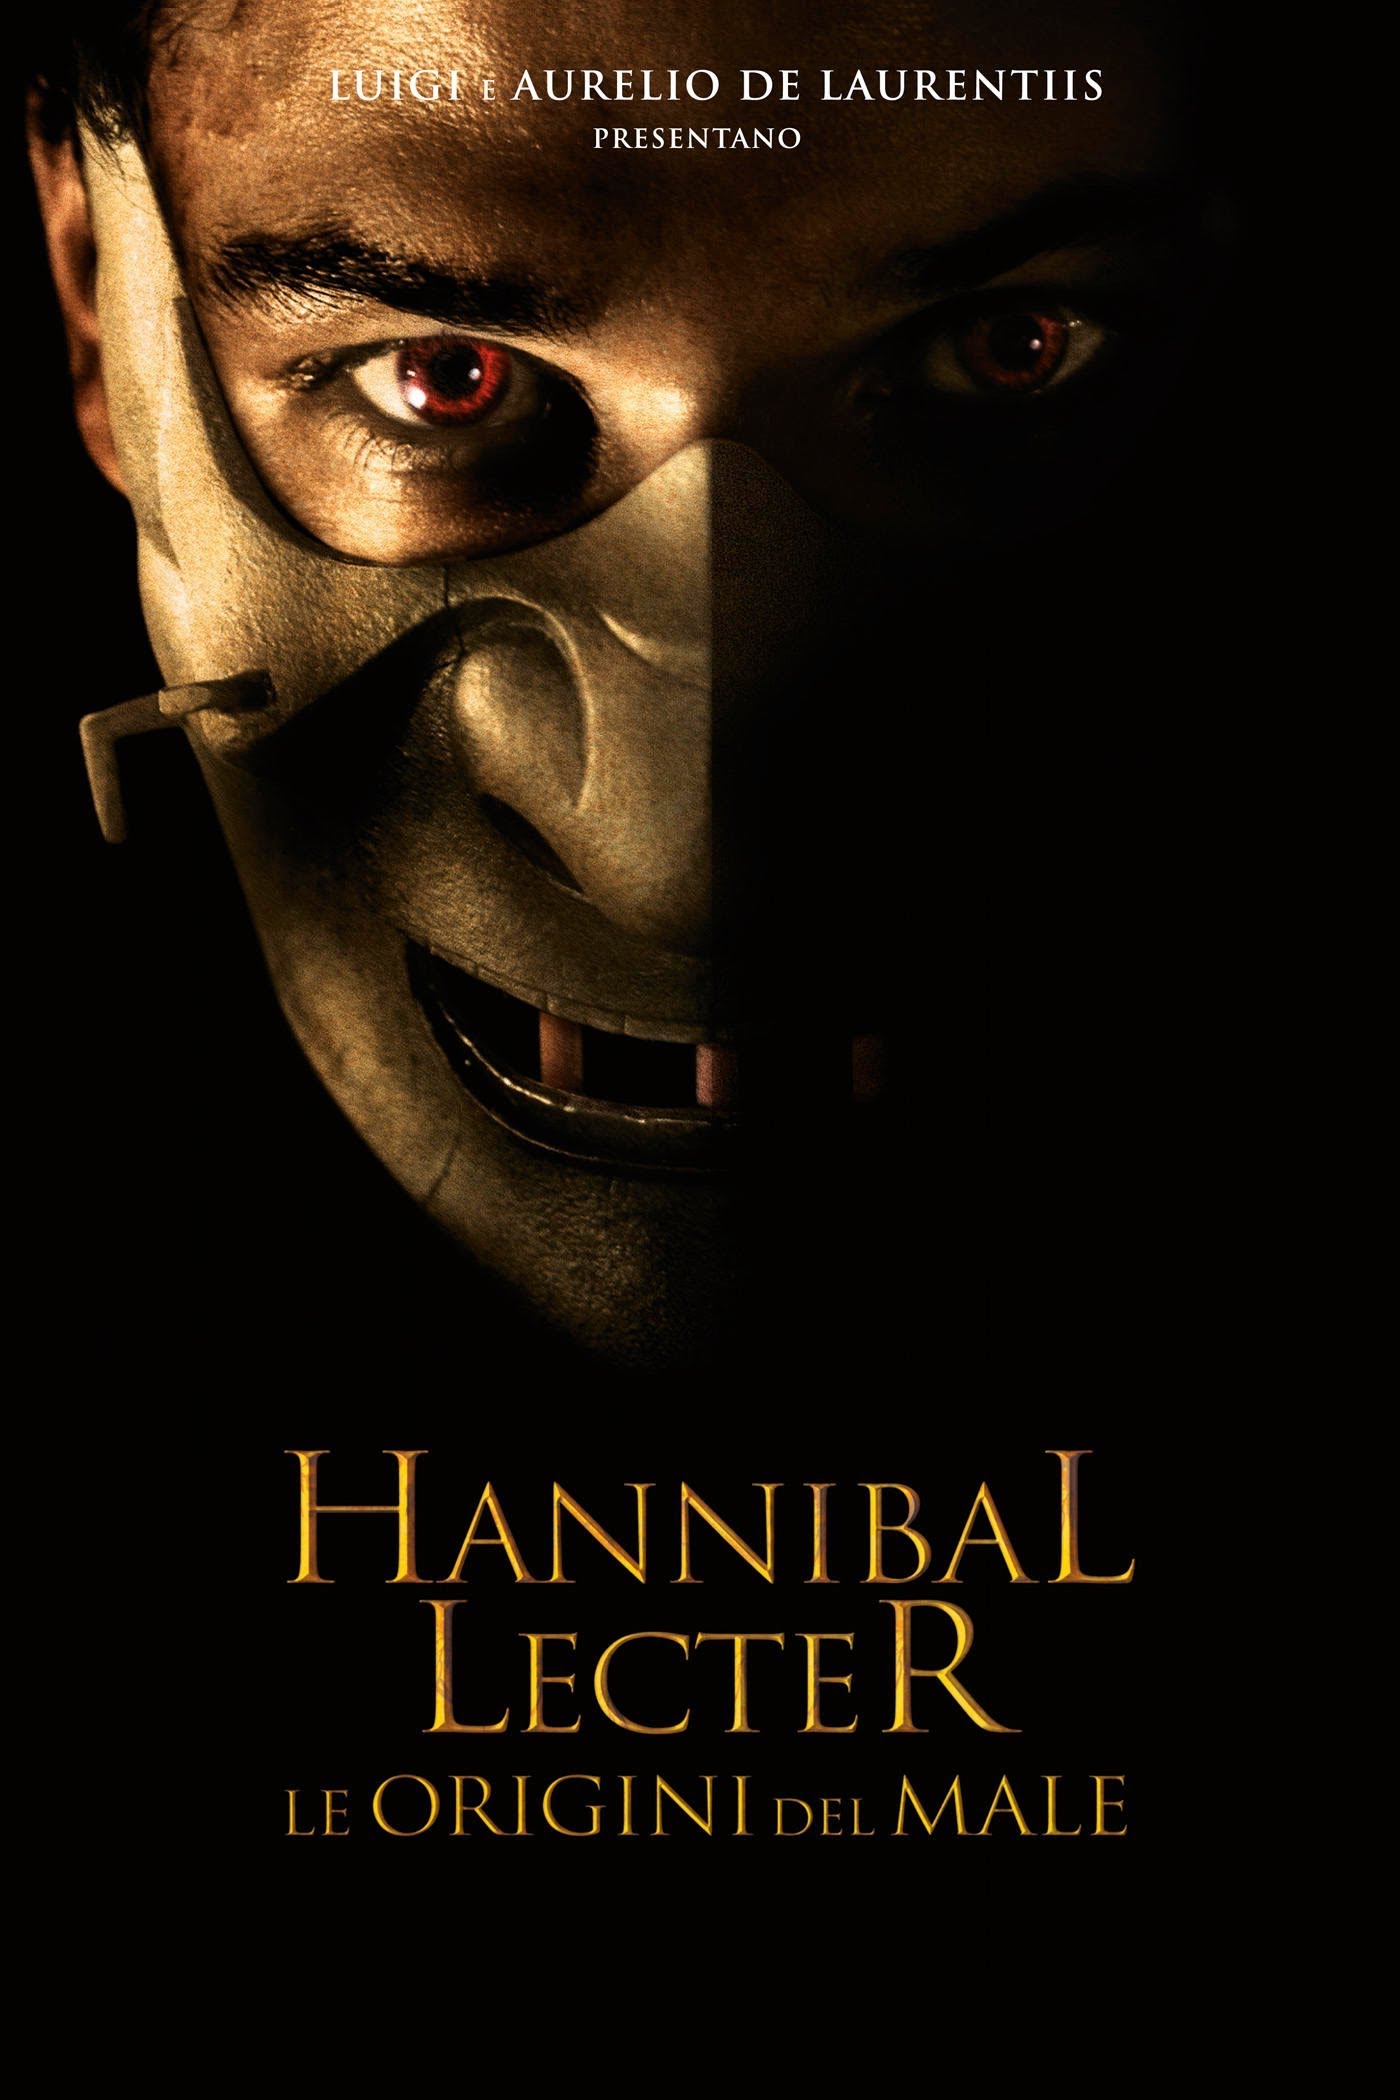 Hannibal Lecter – Le origini del male [HD] (2007)